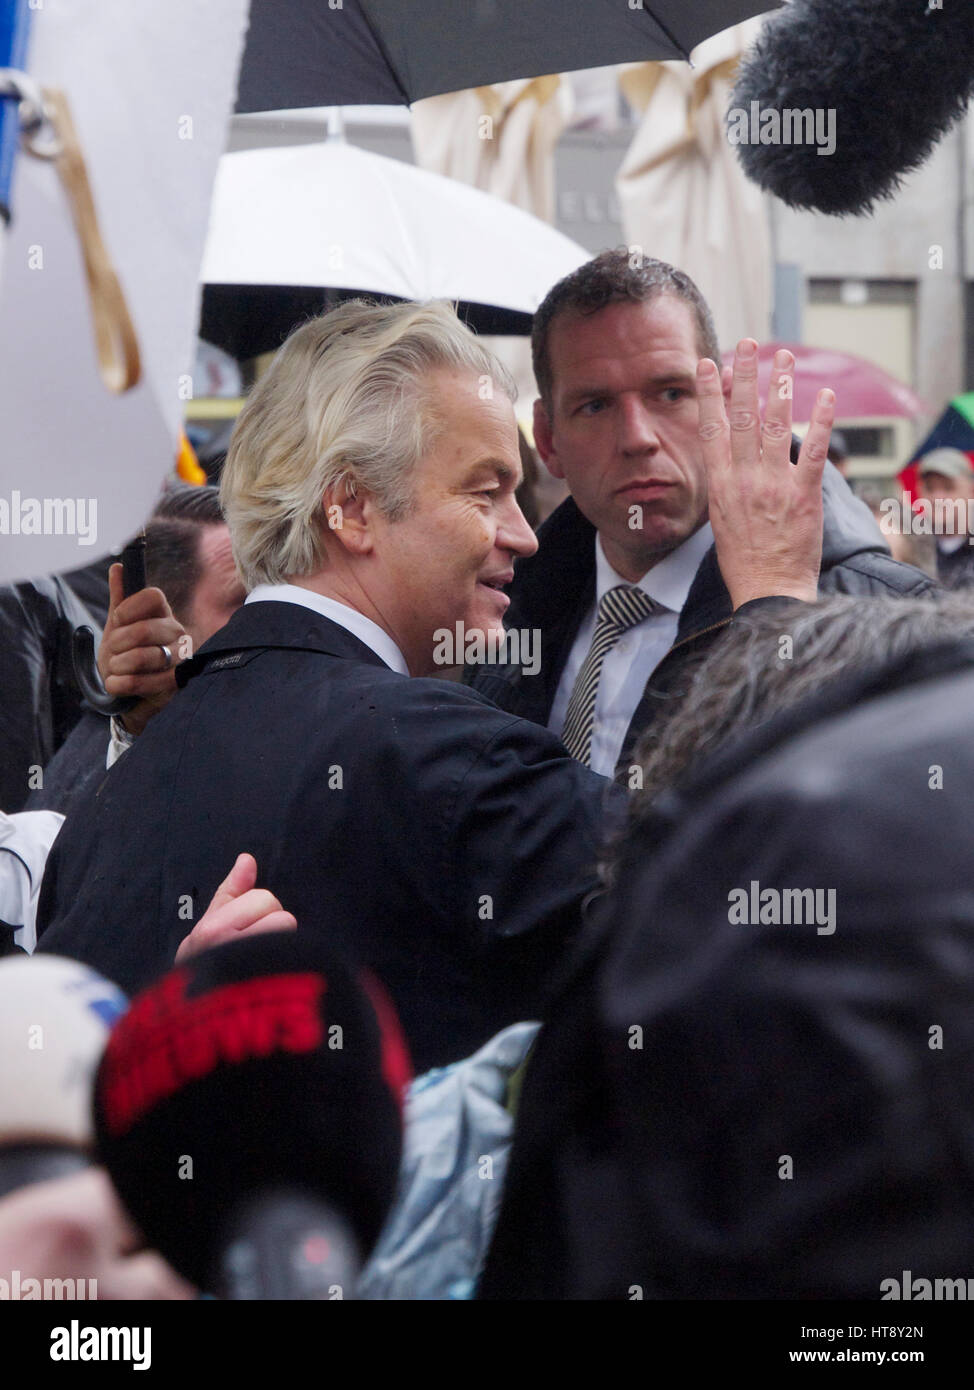 Partido populista holandés PVV líder político Geert Wilders en Breda, rodeado por reporteros y guardaespaldas. Foto de stock